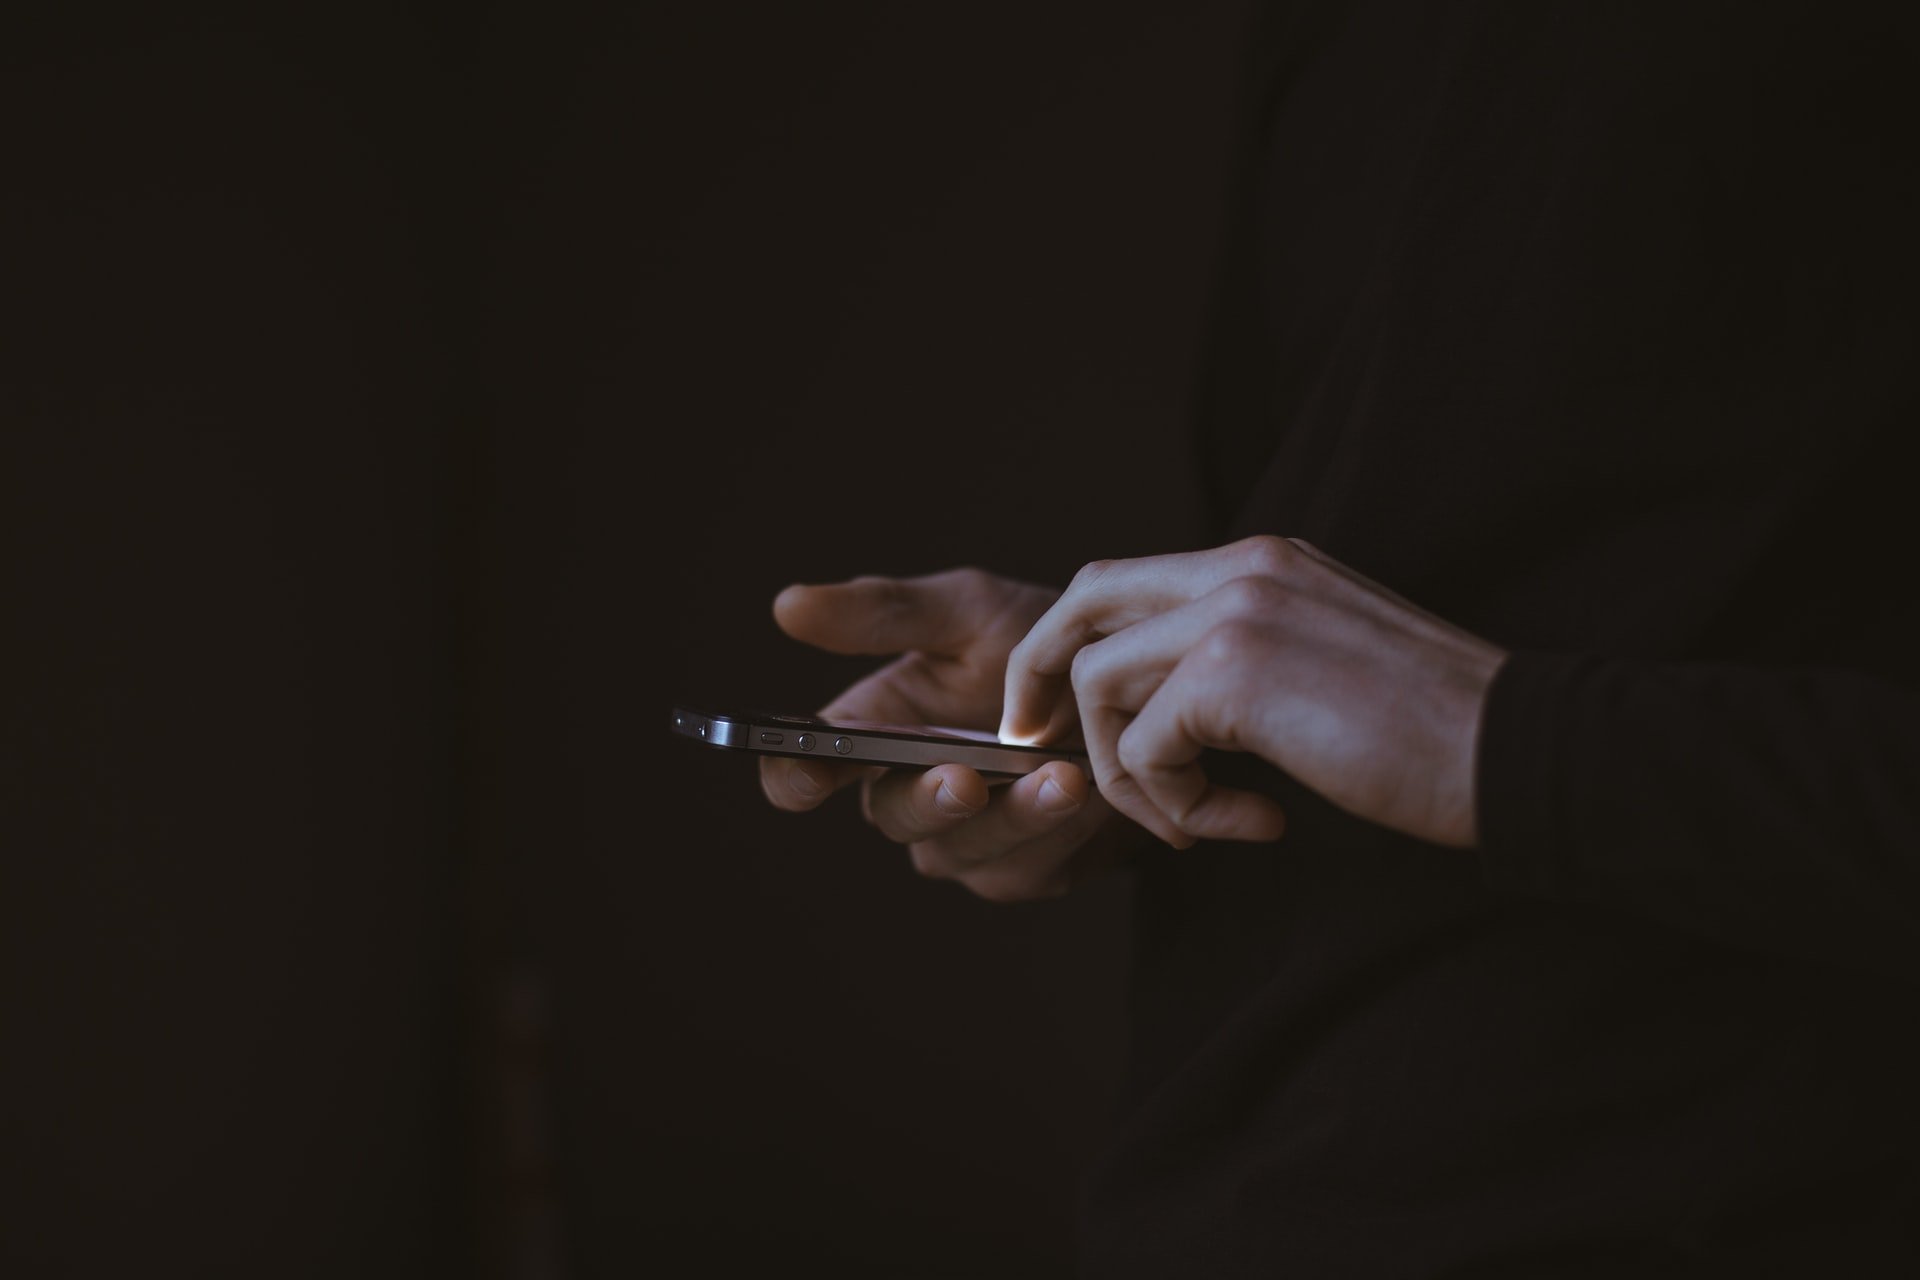 Mensch mit Handy in der Hand vor schwarzem Hintergrund